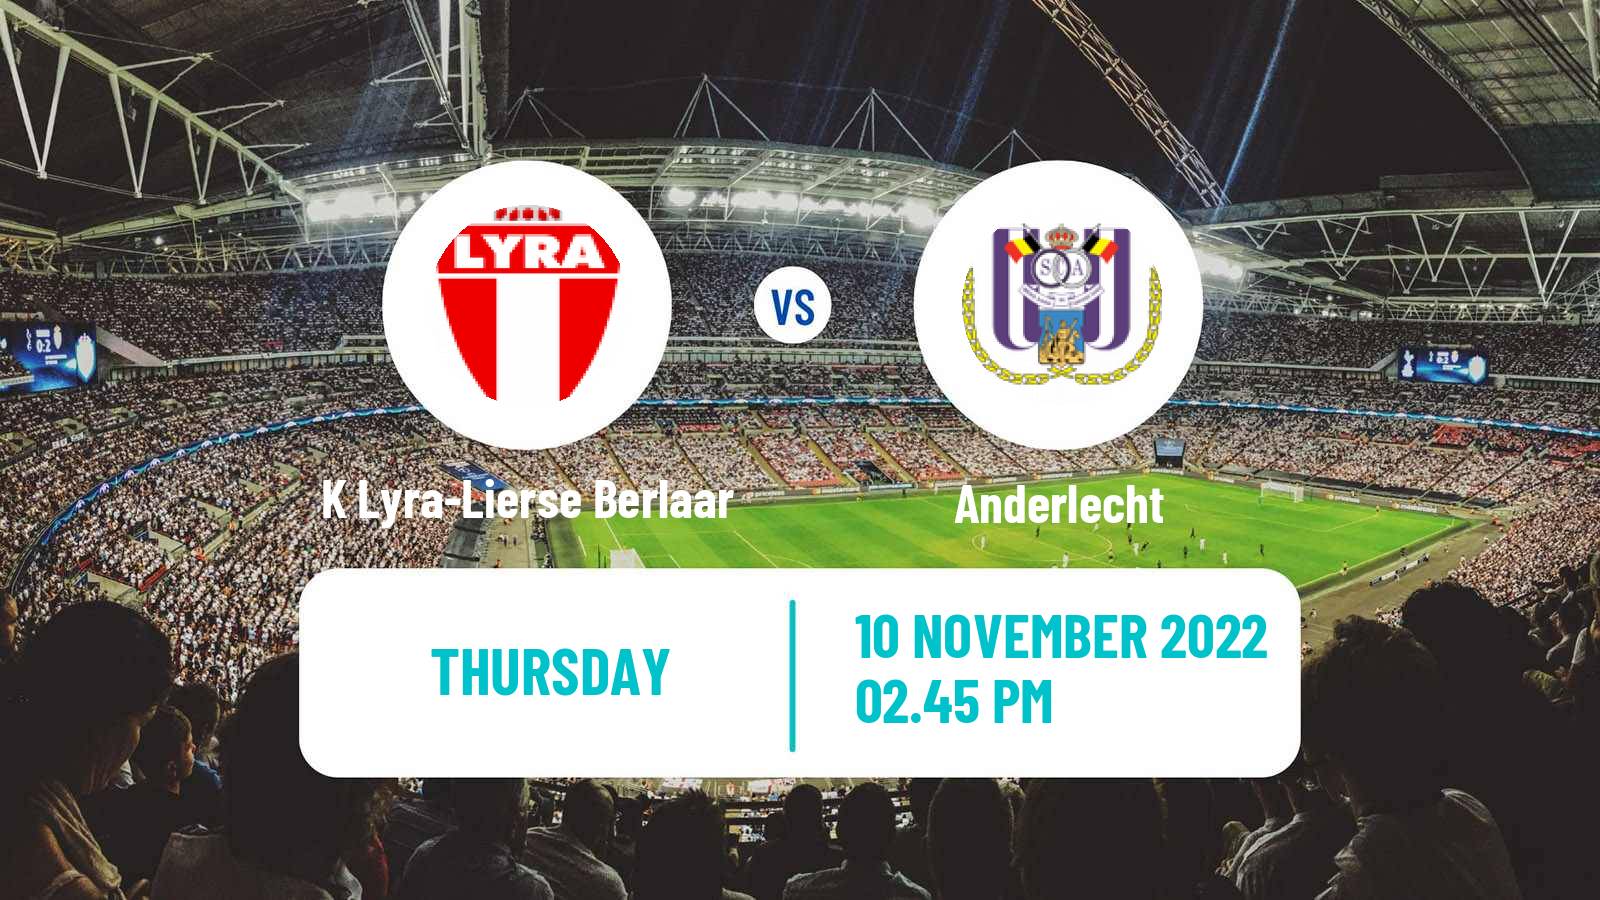 Soccer Belgian Cup K Lyra-Lierse Berlaar - Anderlecht